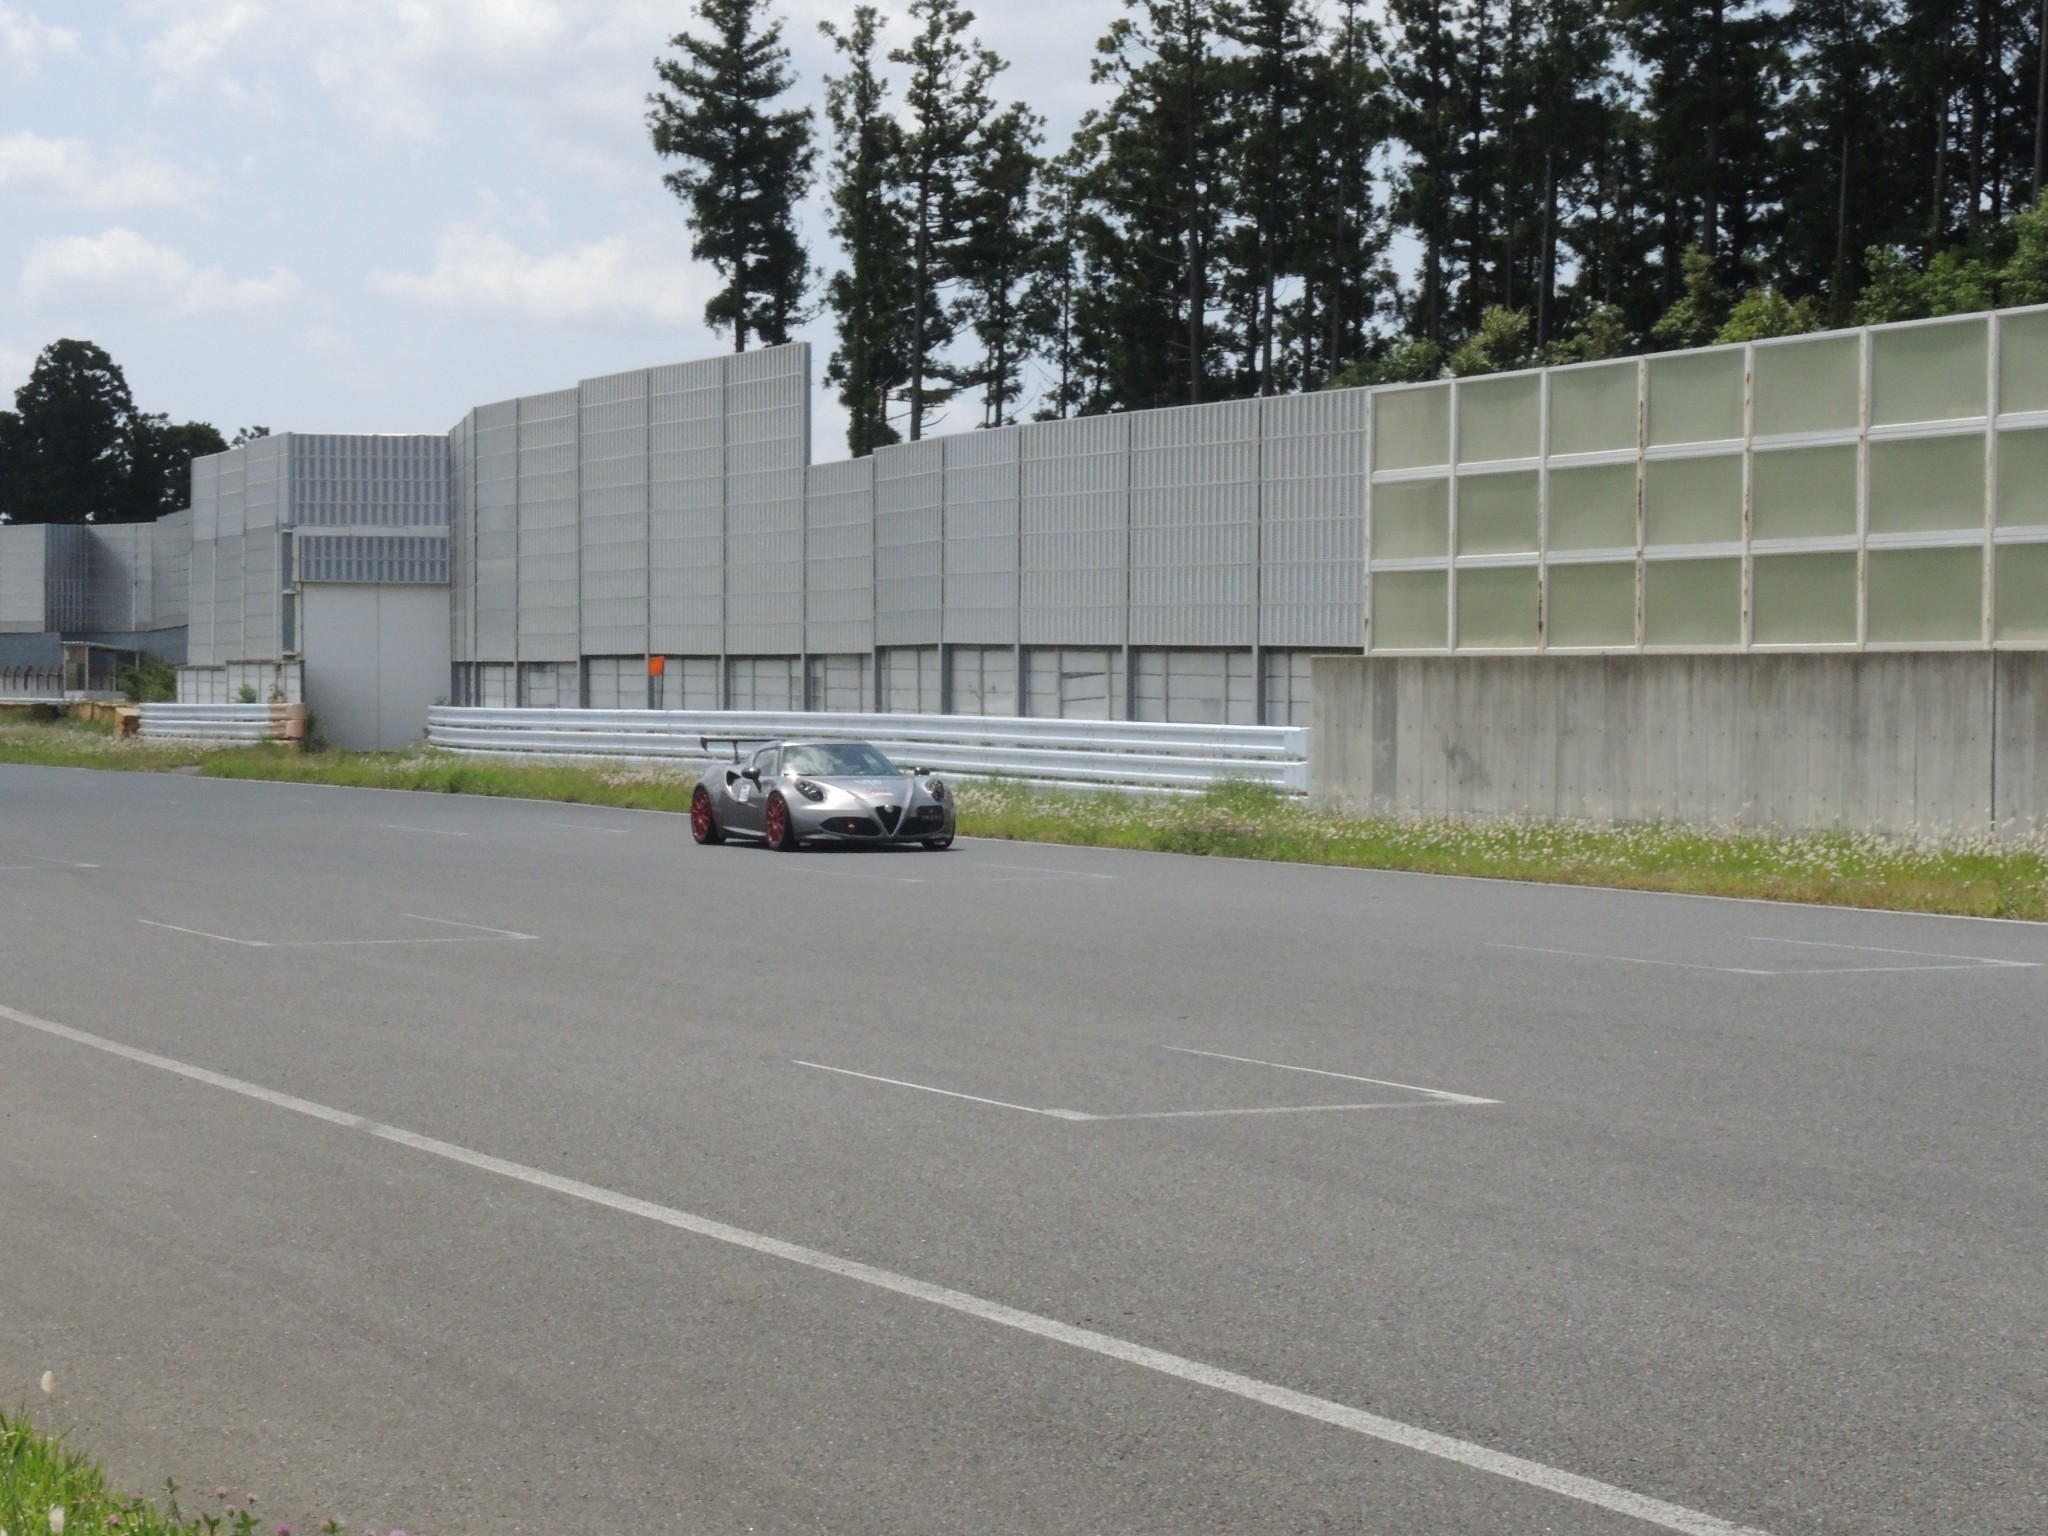 アルファロメオ4Cラジアルタイヤ最速プロジェクト 429袖ヶ浦フォレストレースウェイ サーキットテスト (2)